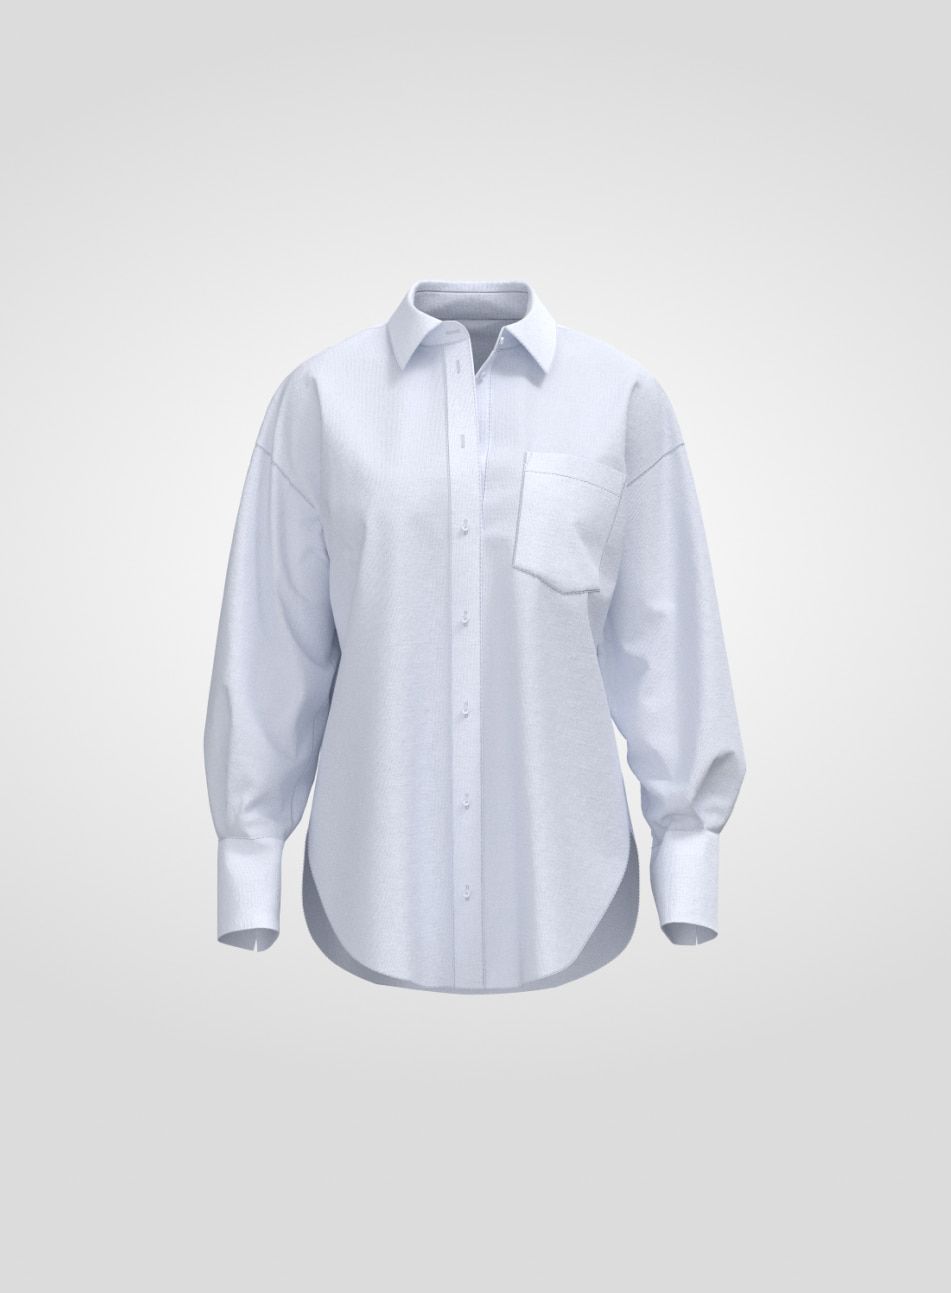 Une chemise blanche à boutons. 